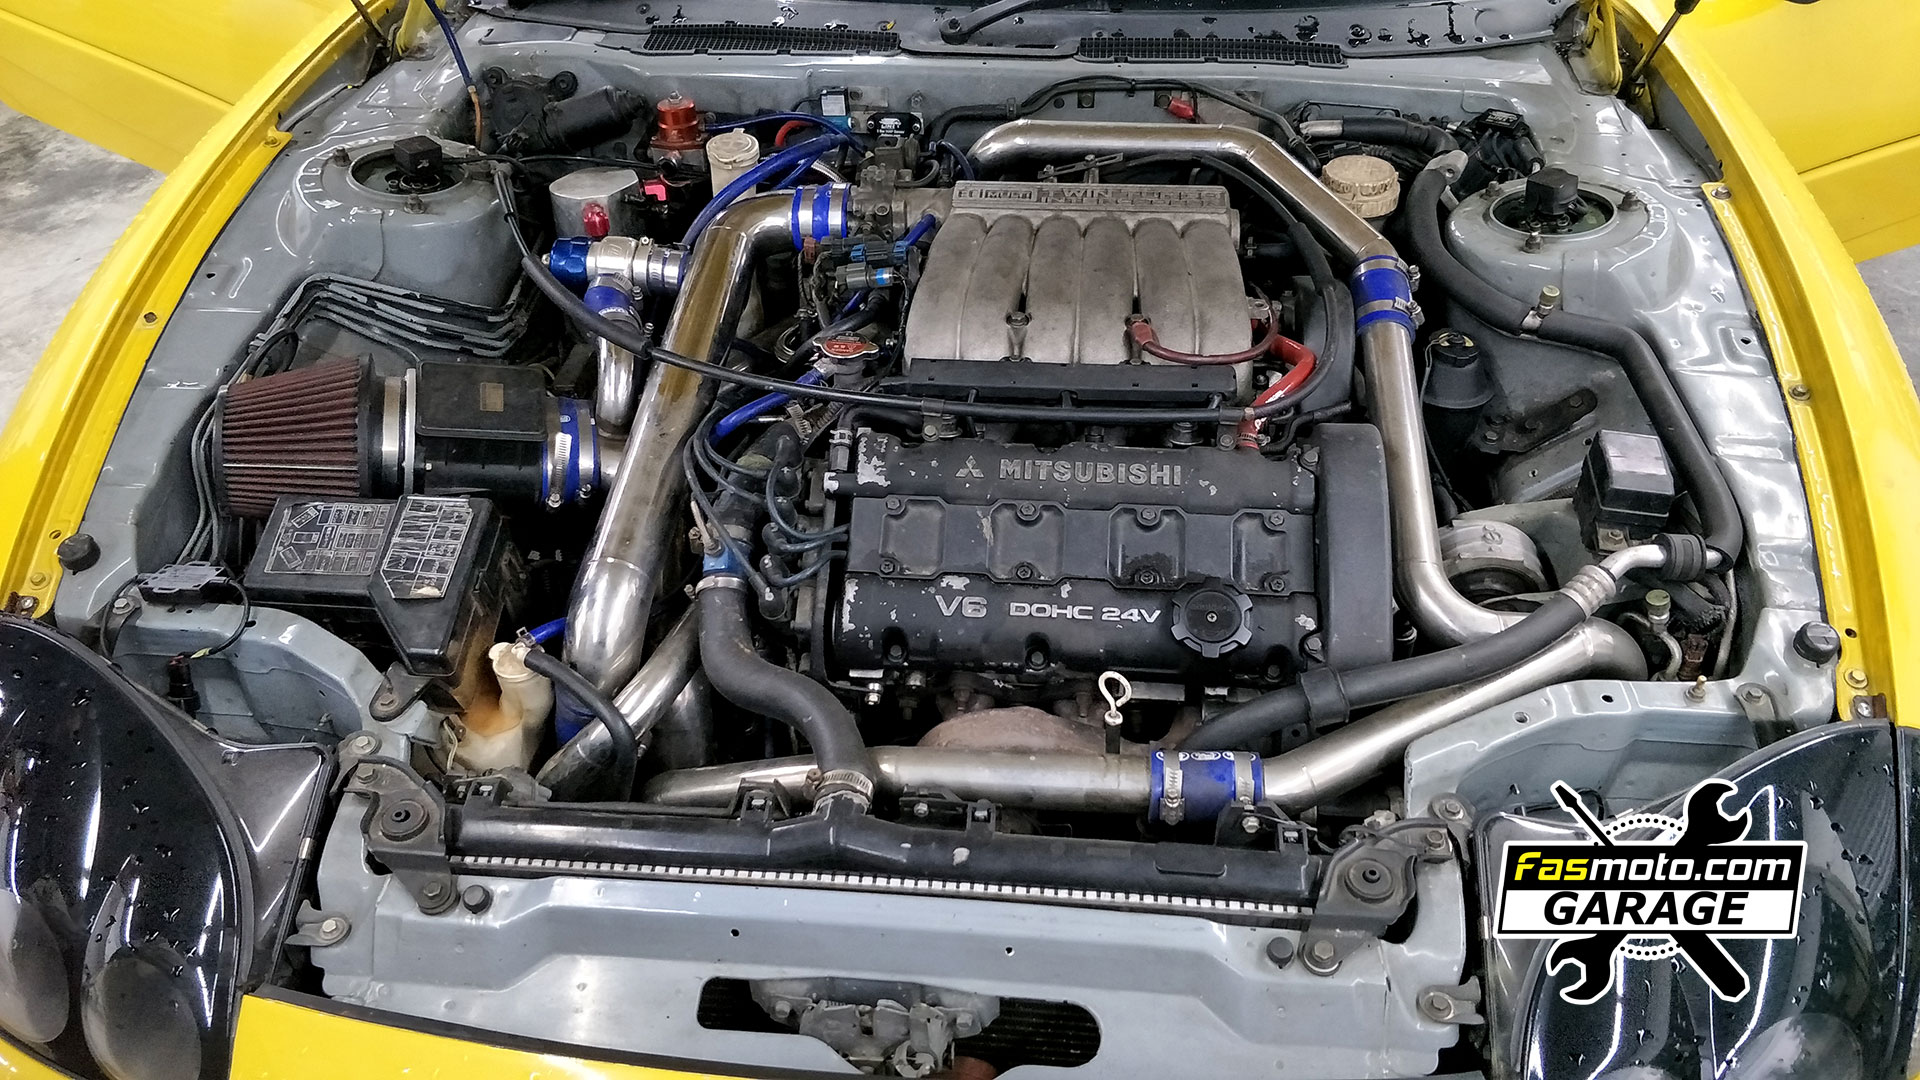 Mitsubishi GTO Engine Bay V6